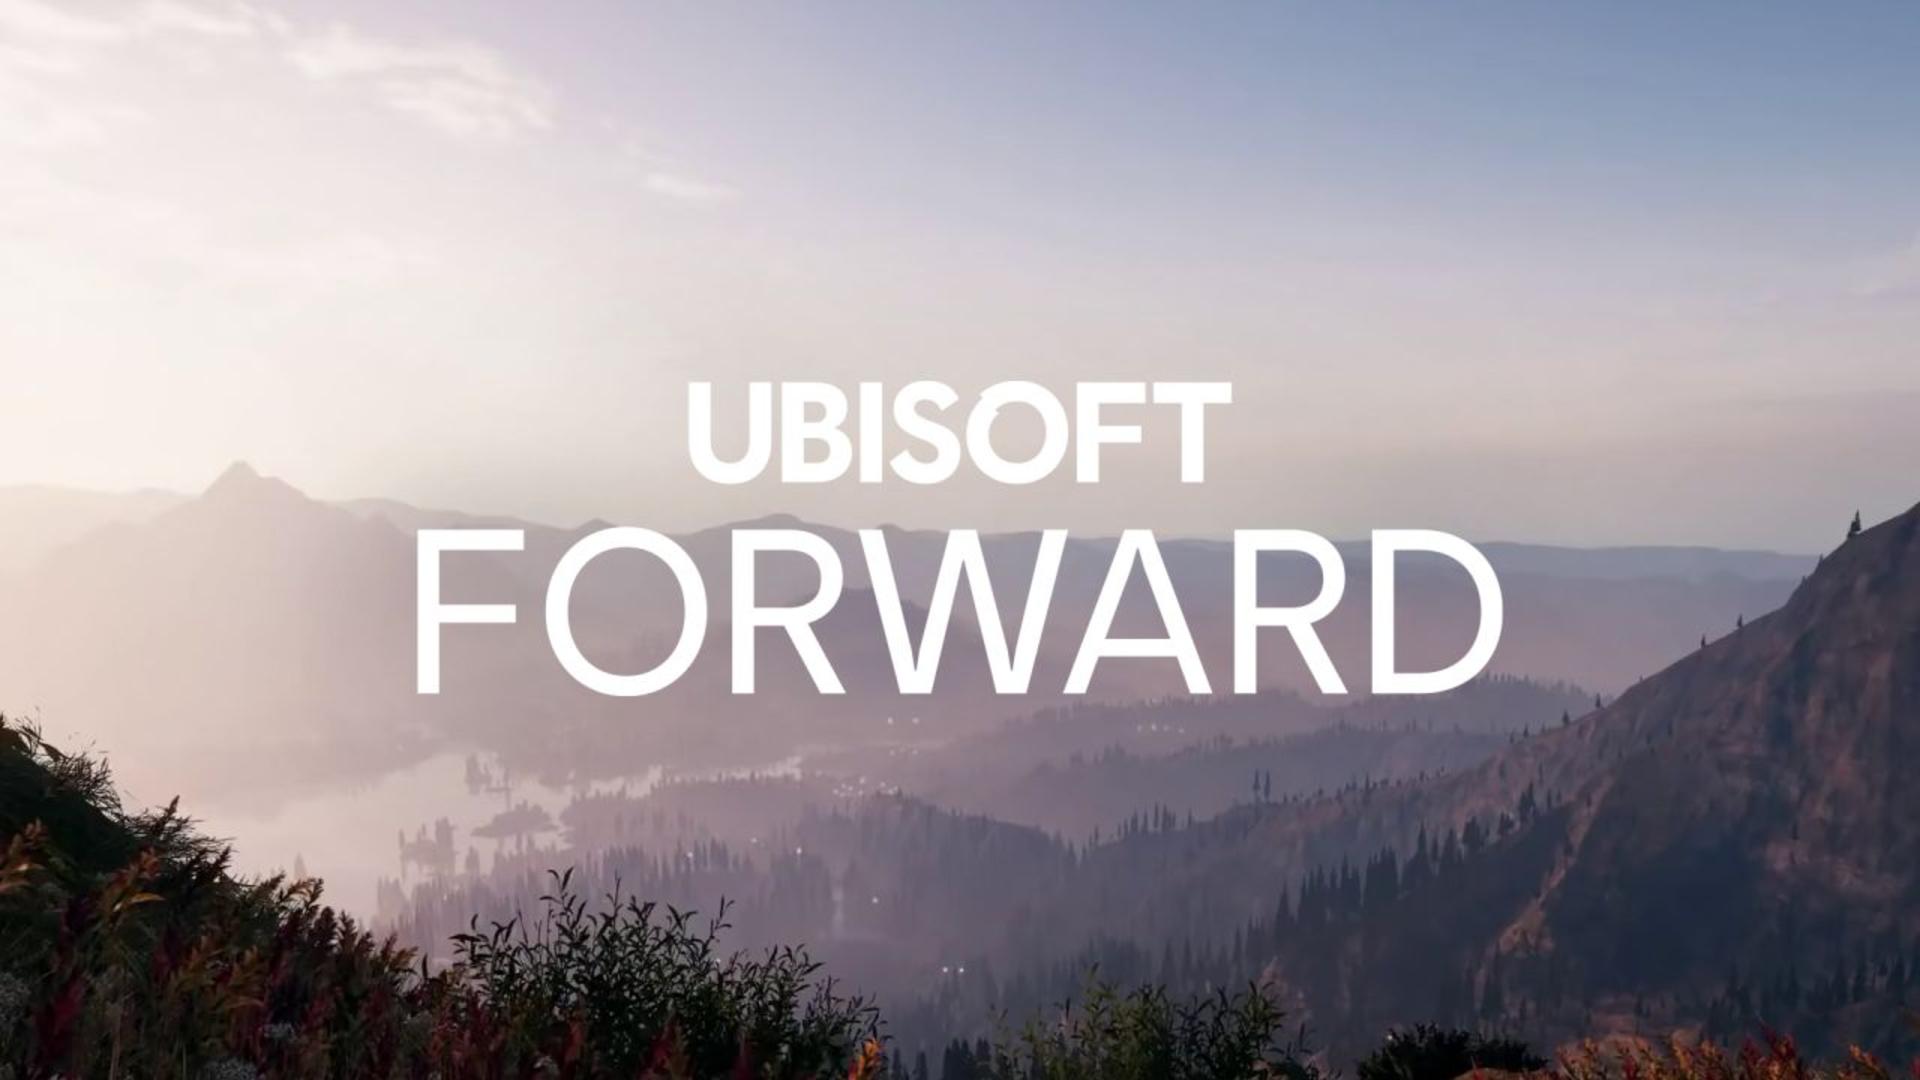 Ubisoft forward será o evento online em julho | f19f21a1 ubisoft forward | super-herói | ubisoft forward super-herói